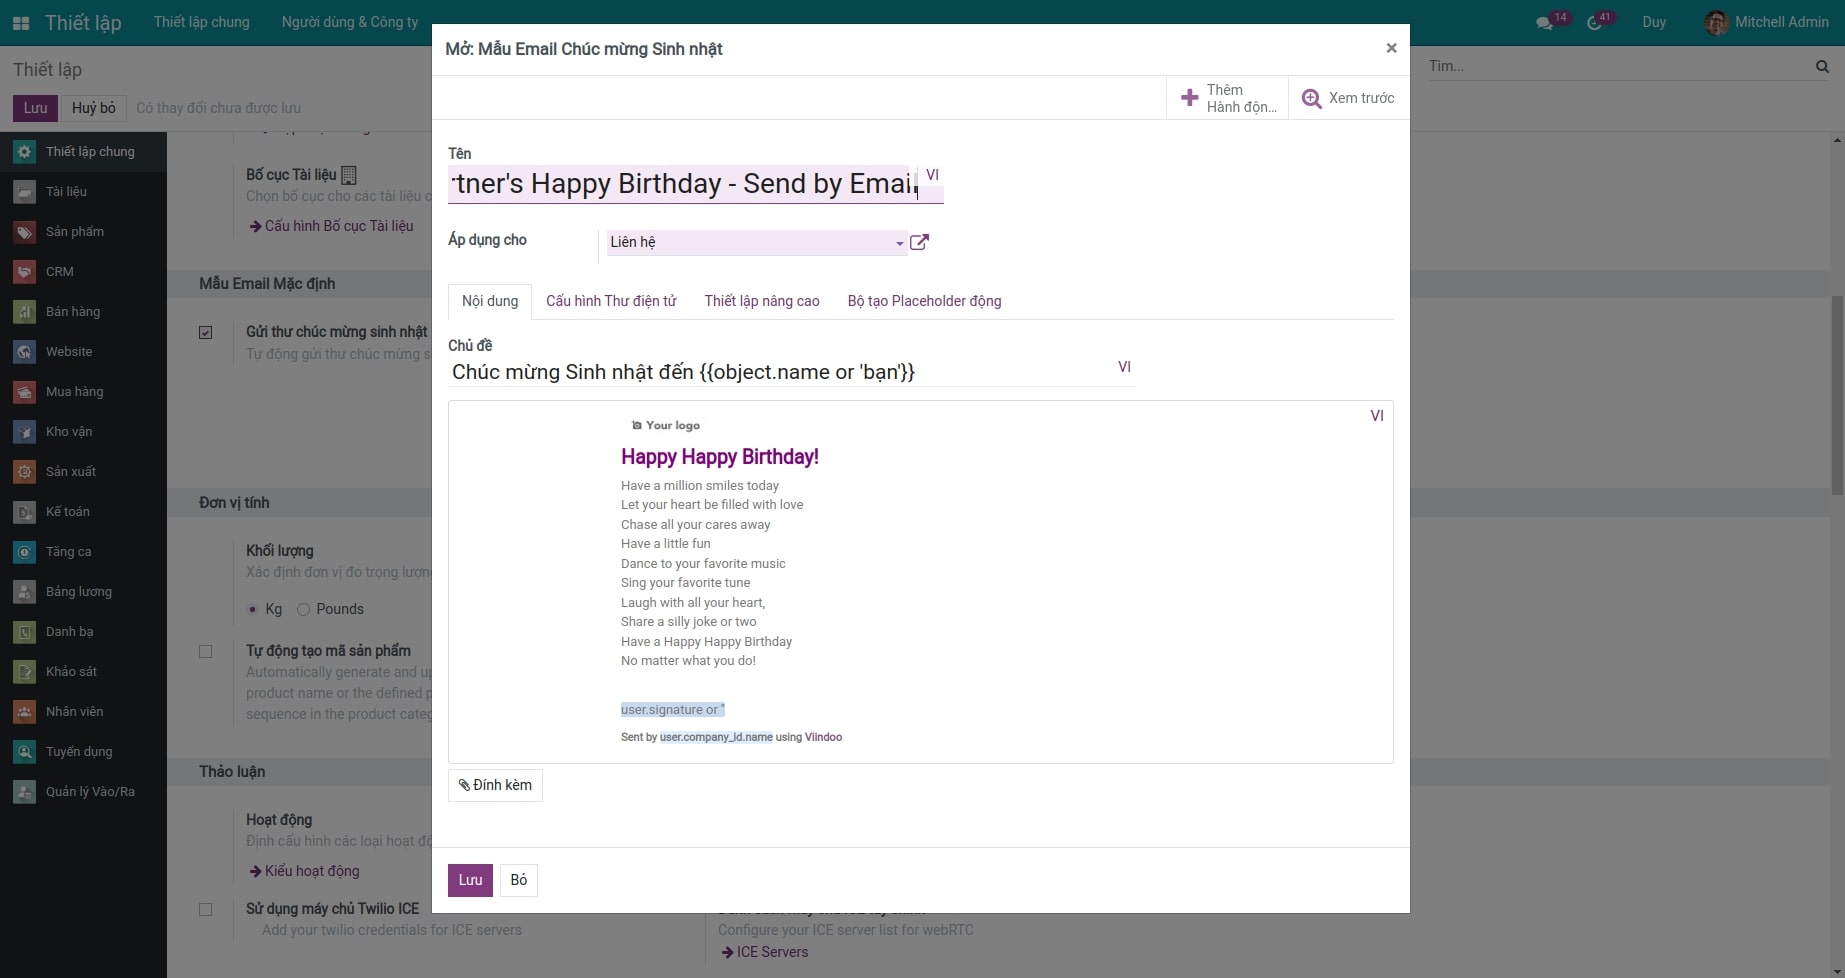 Cấu hình mẫu mail chức mừng sinh nhật